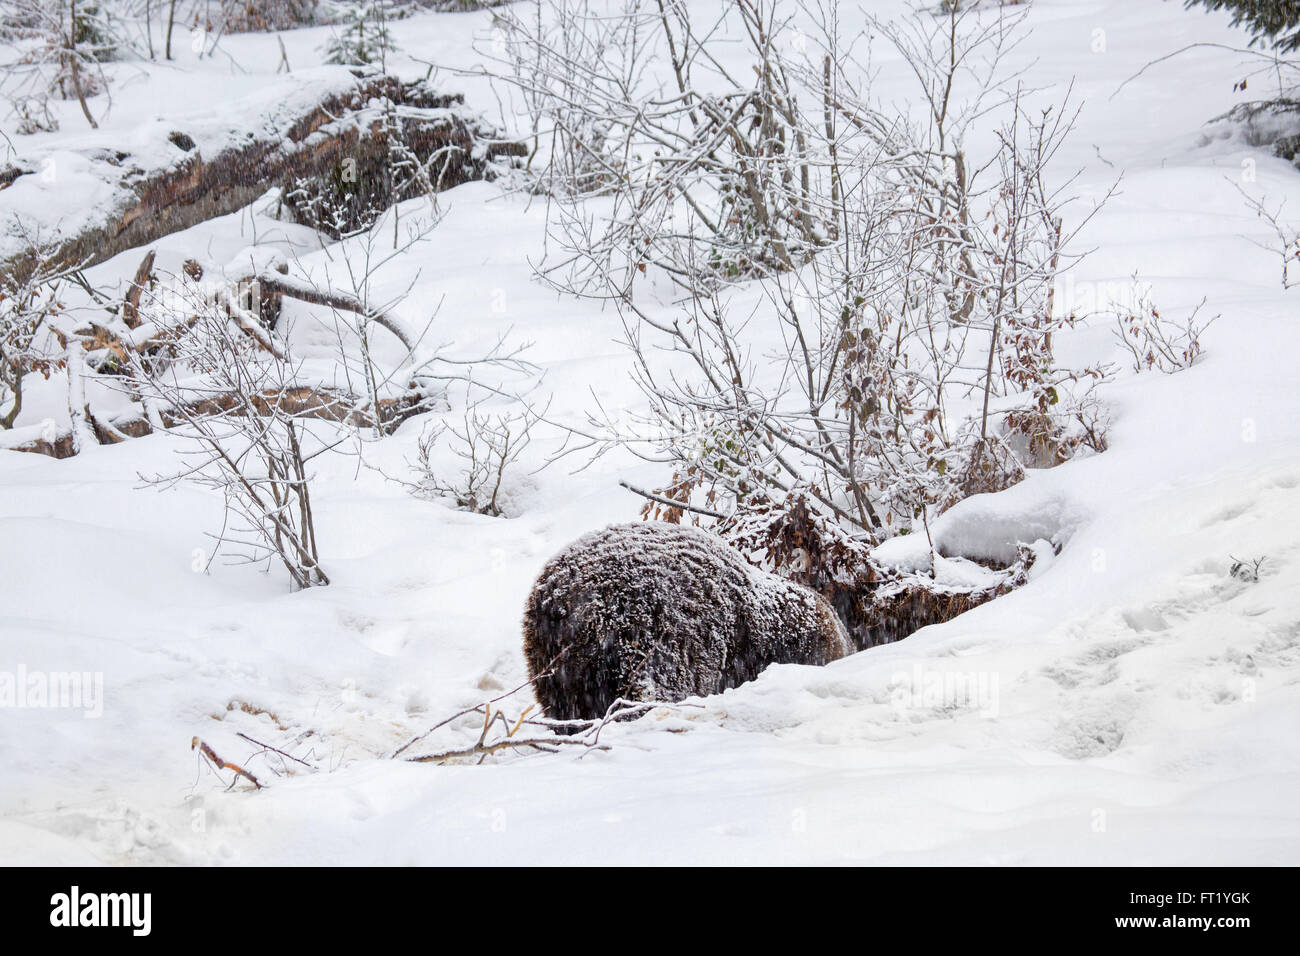 Brown bear (Ursus arctos) entering den during snow shower in autumn / winter Stock Photo